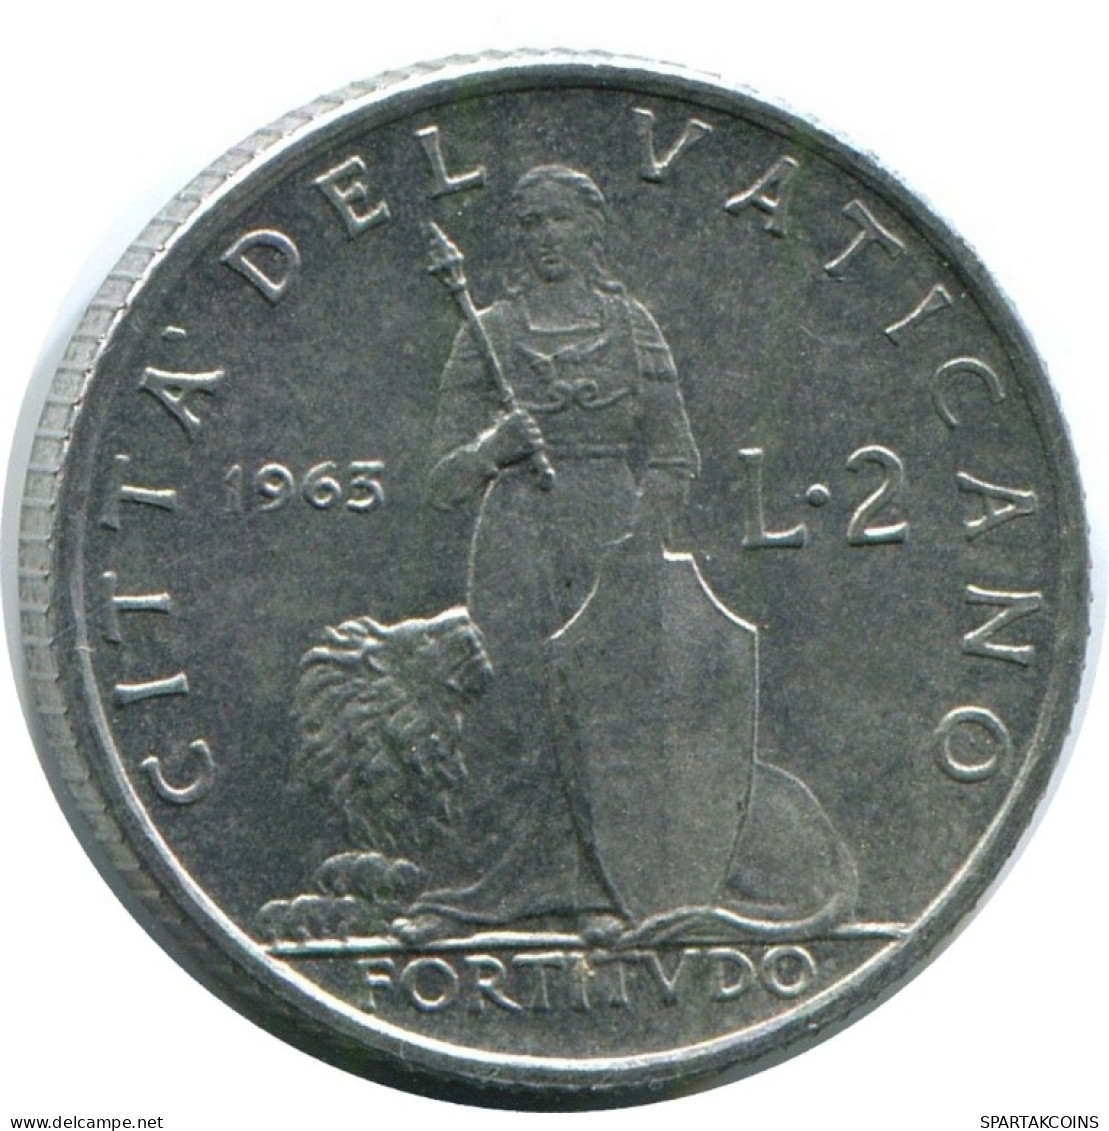 2 LIRE 1963 VATICAN Coin Paul VI (1963-1978) #AH378.13.U.A - Vatikan